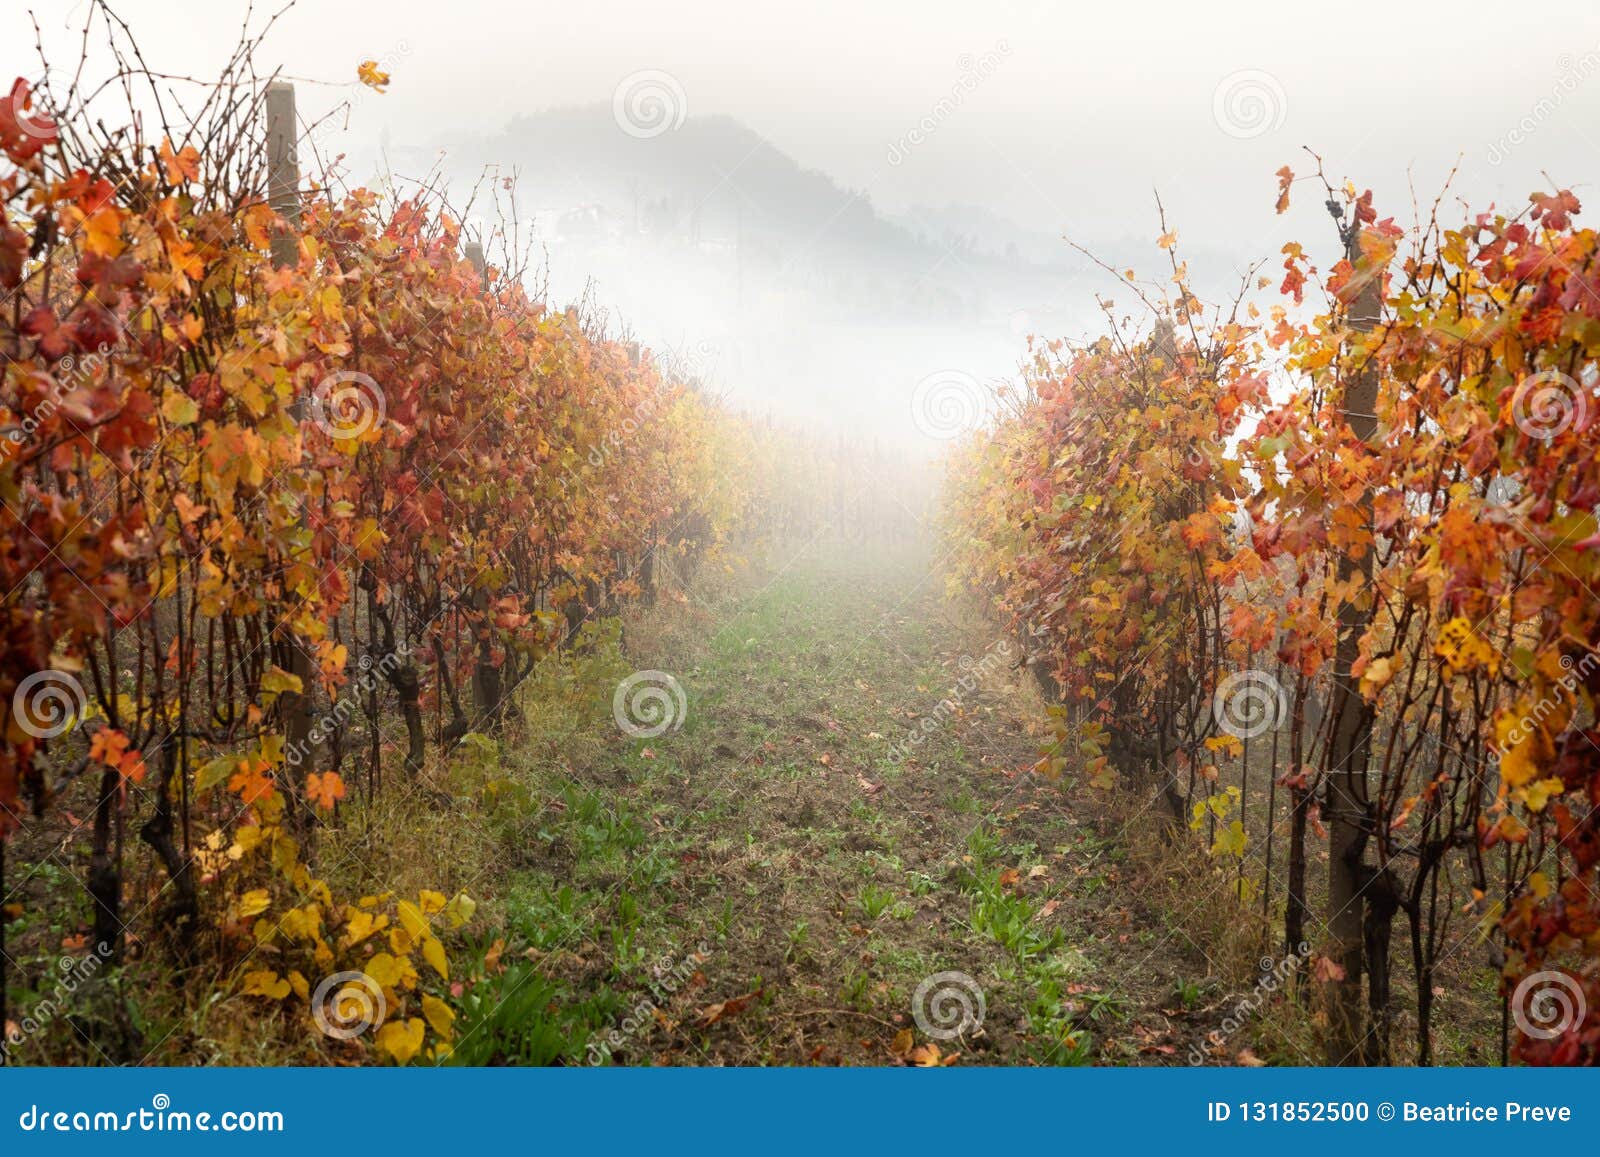 landscape of barolo wine region